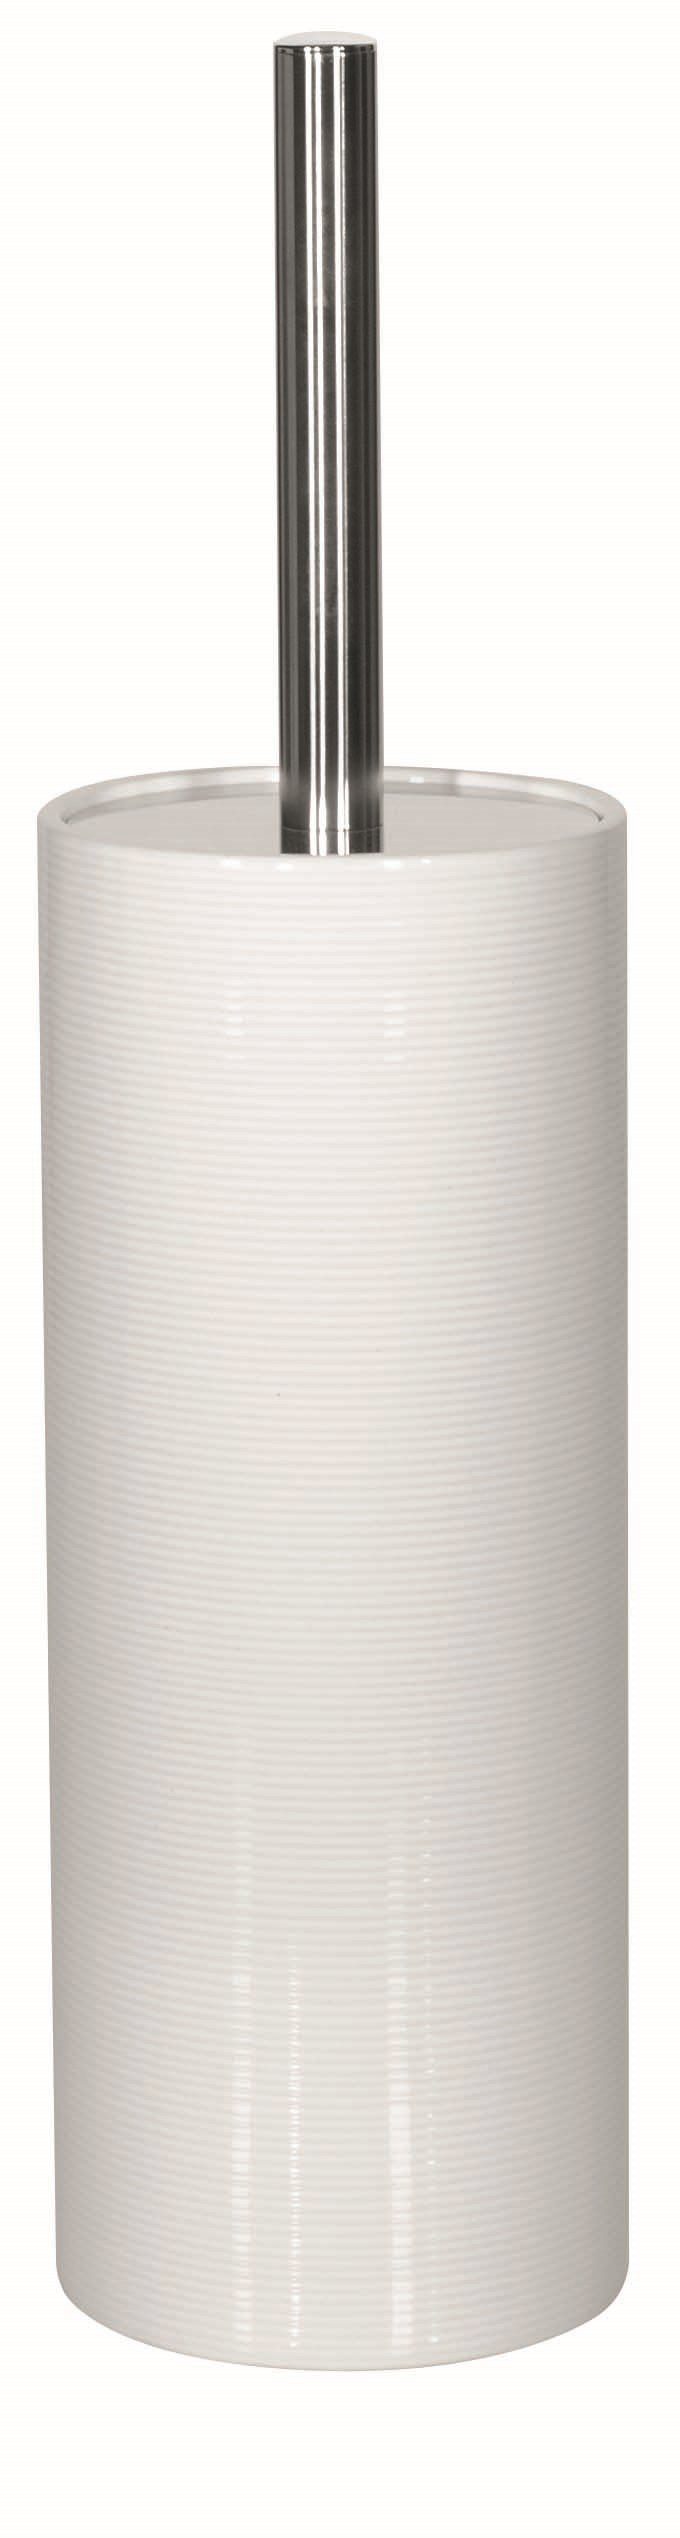 Toilettenpapierhalter zu mit Toilettenbürste hochwertiger Bad-Accessoires 3D-Effekt, in aus Keramik, Deckel, WC-Bürste Passend TUBE türkisblau, der Serie RIBBED, RIBBED TUBE mit spirella anderen Rillenstruktur